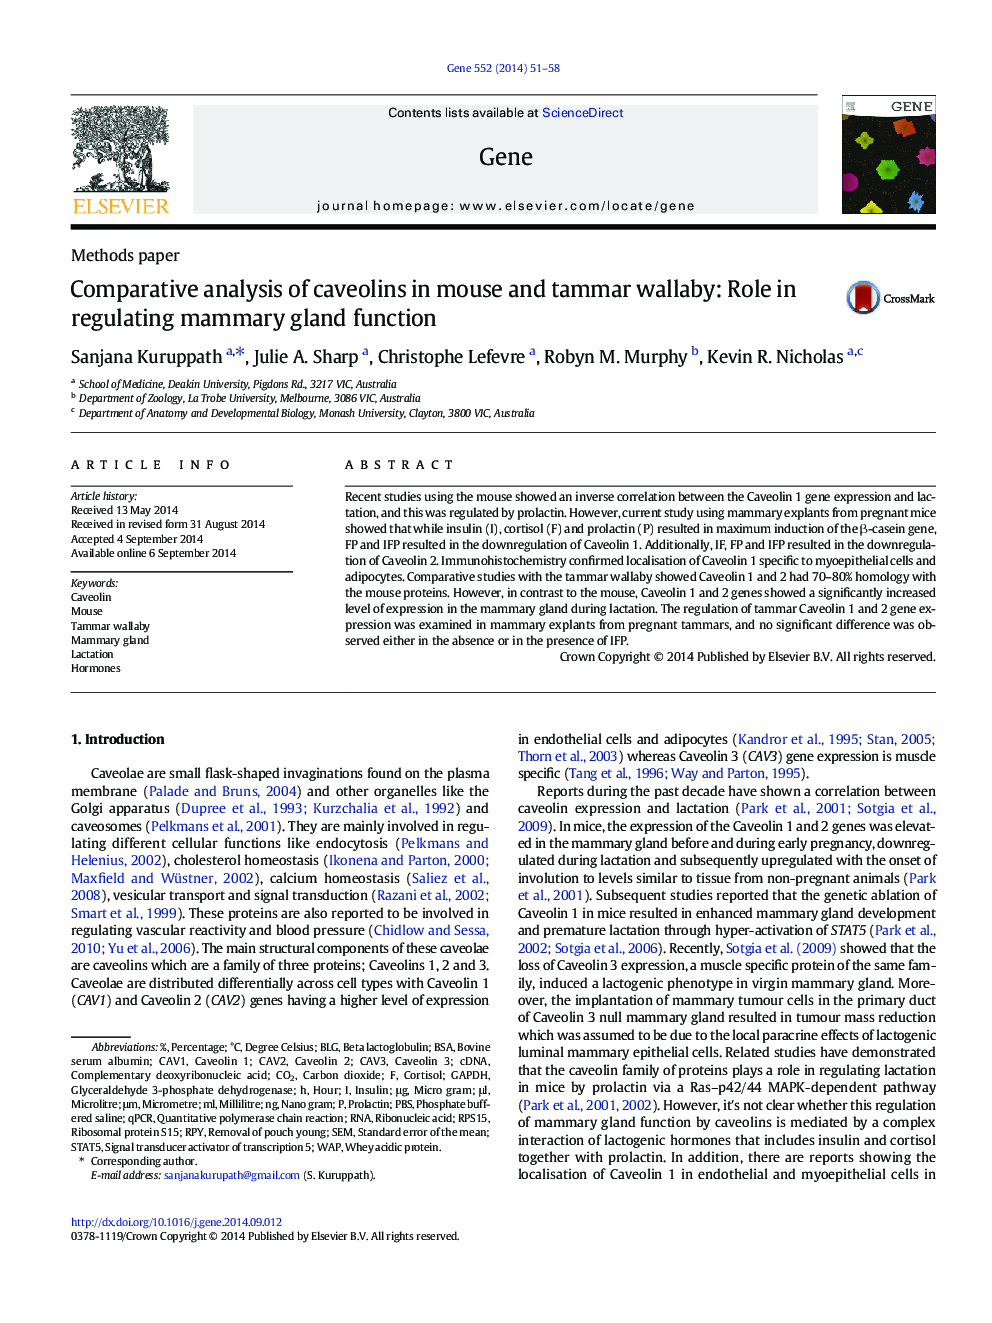 تجزیه و تحلیل مقایسهای کاوئولینها در موش و تامار والابی: نقش در تنظیم عملکرد غدد پستان 